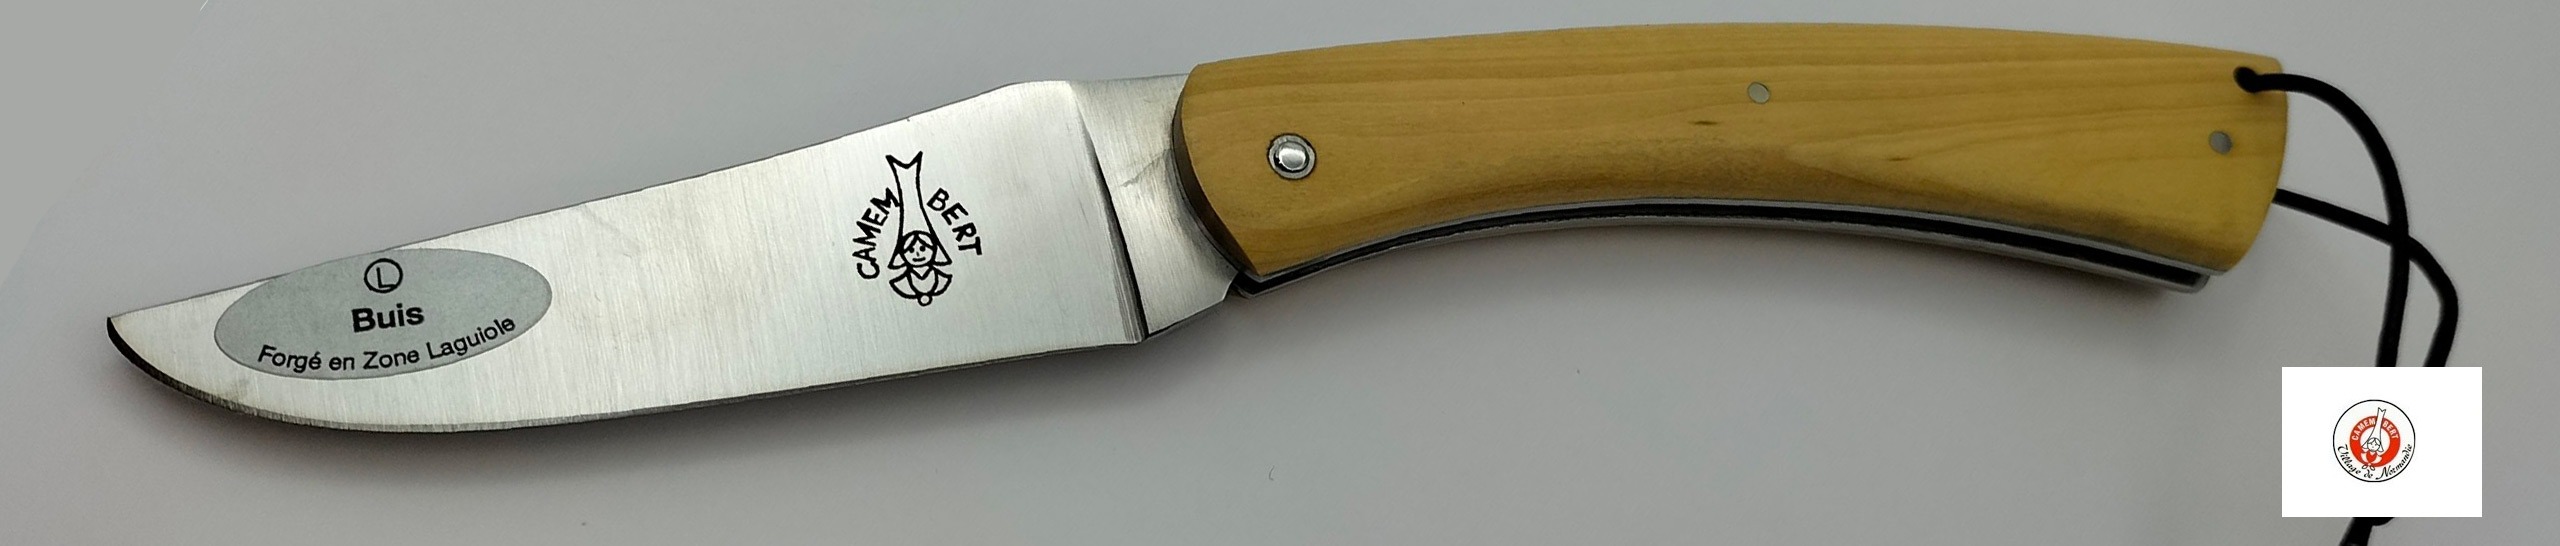 couteau de poche camembert artisan france